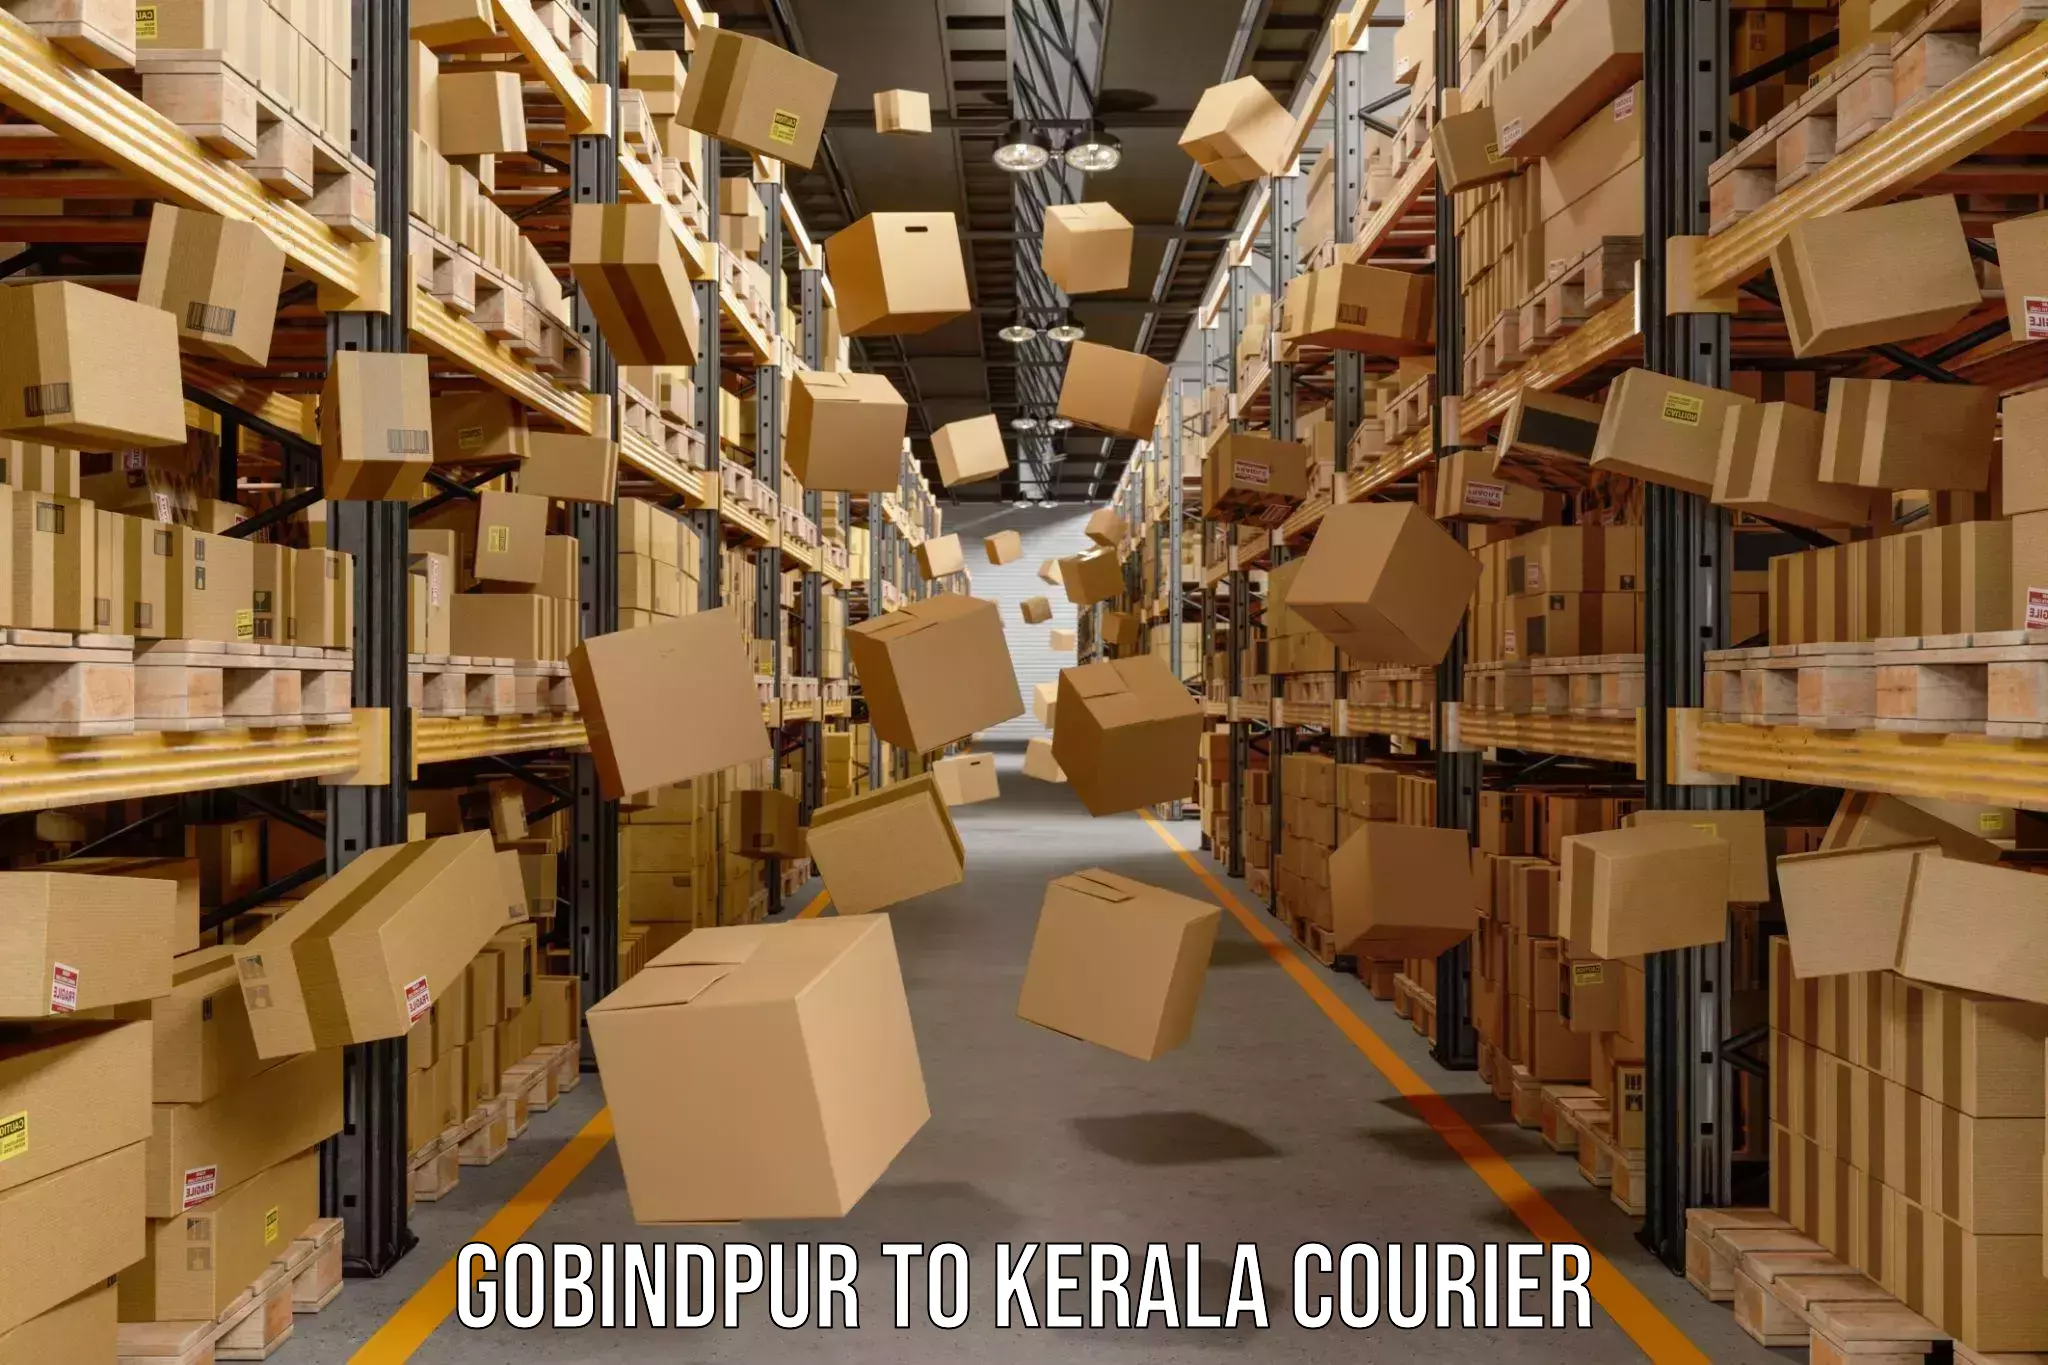 User-friendly courier app in Gobindpur to Pazhayannur